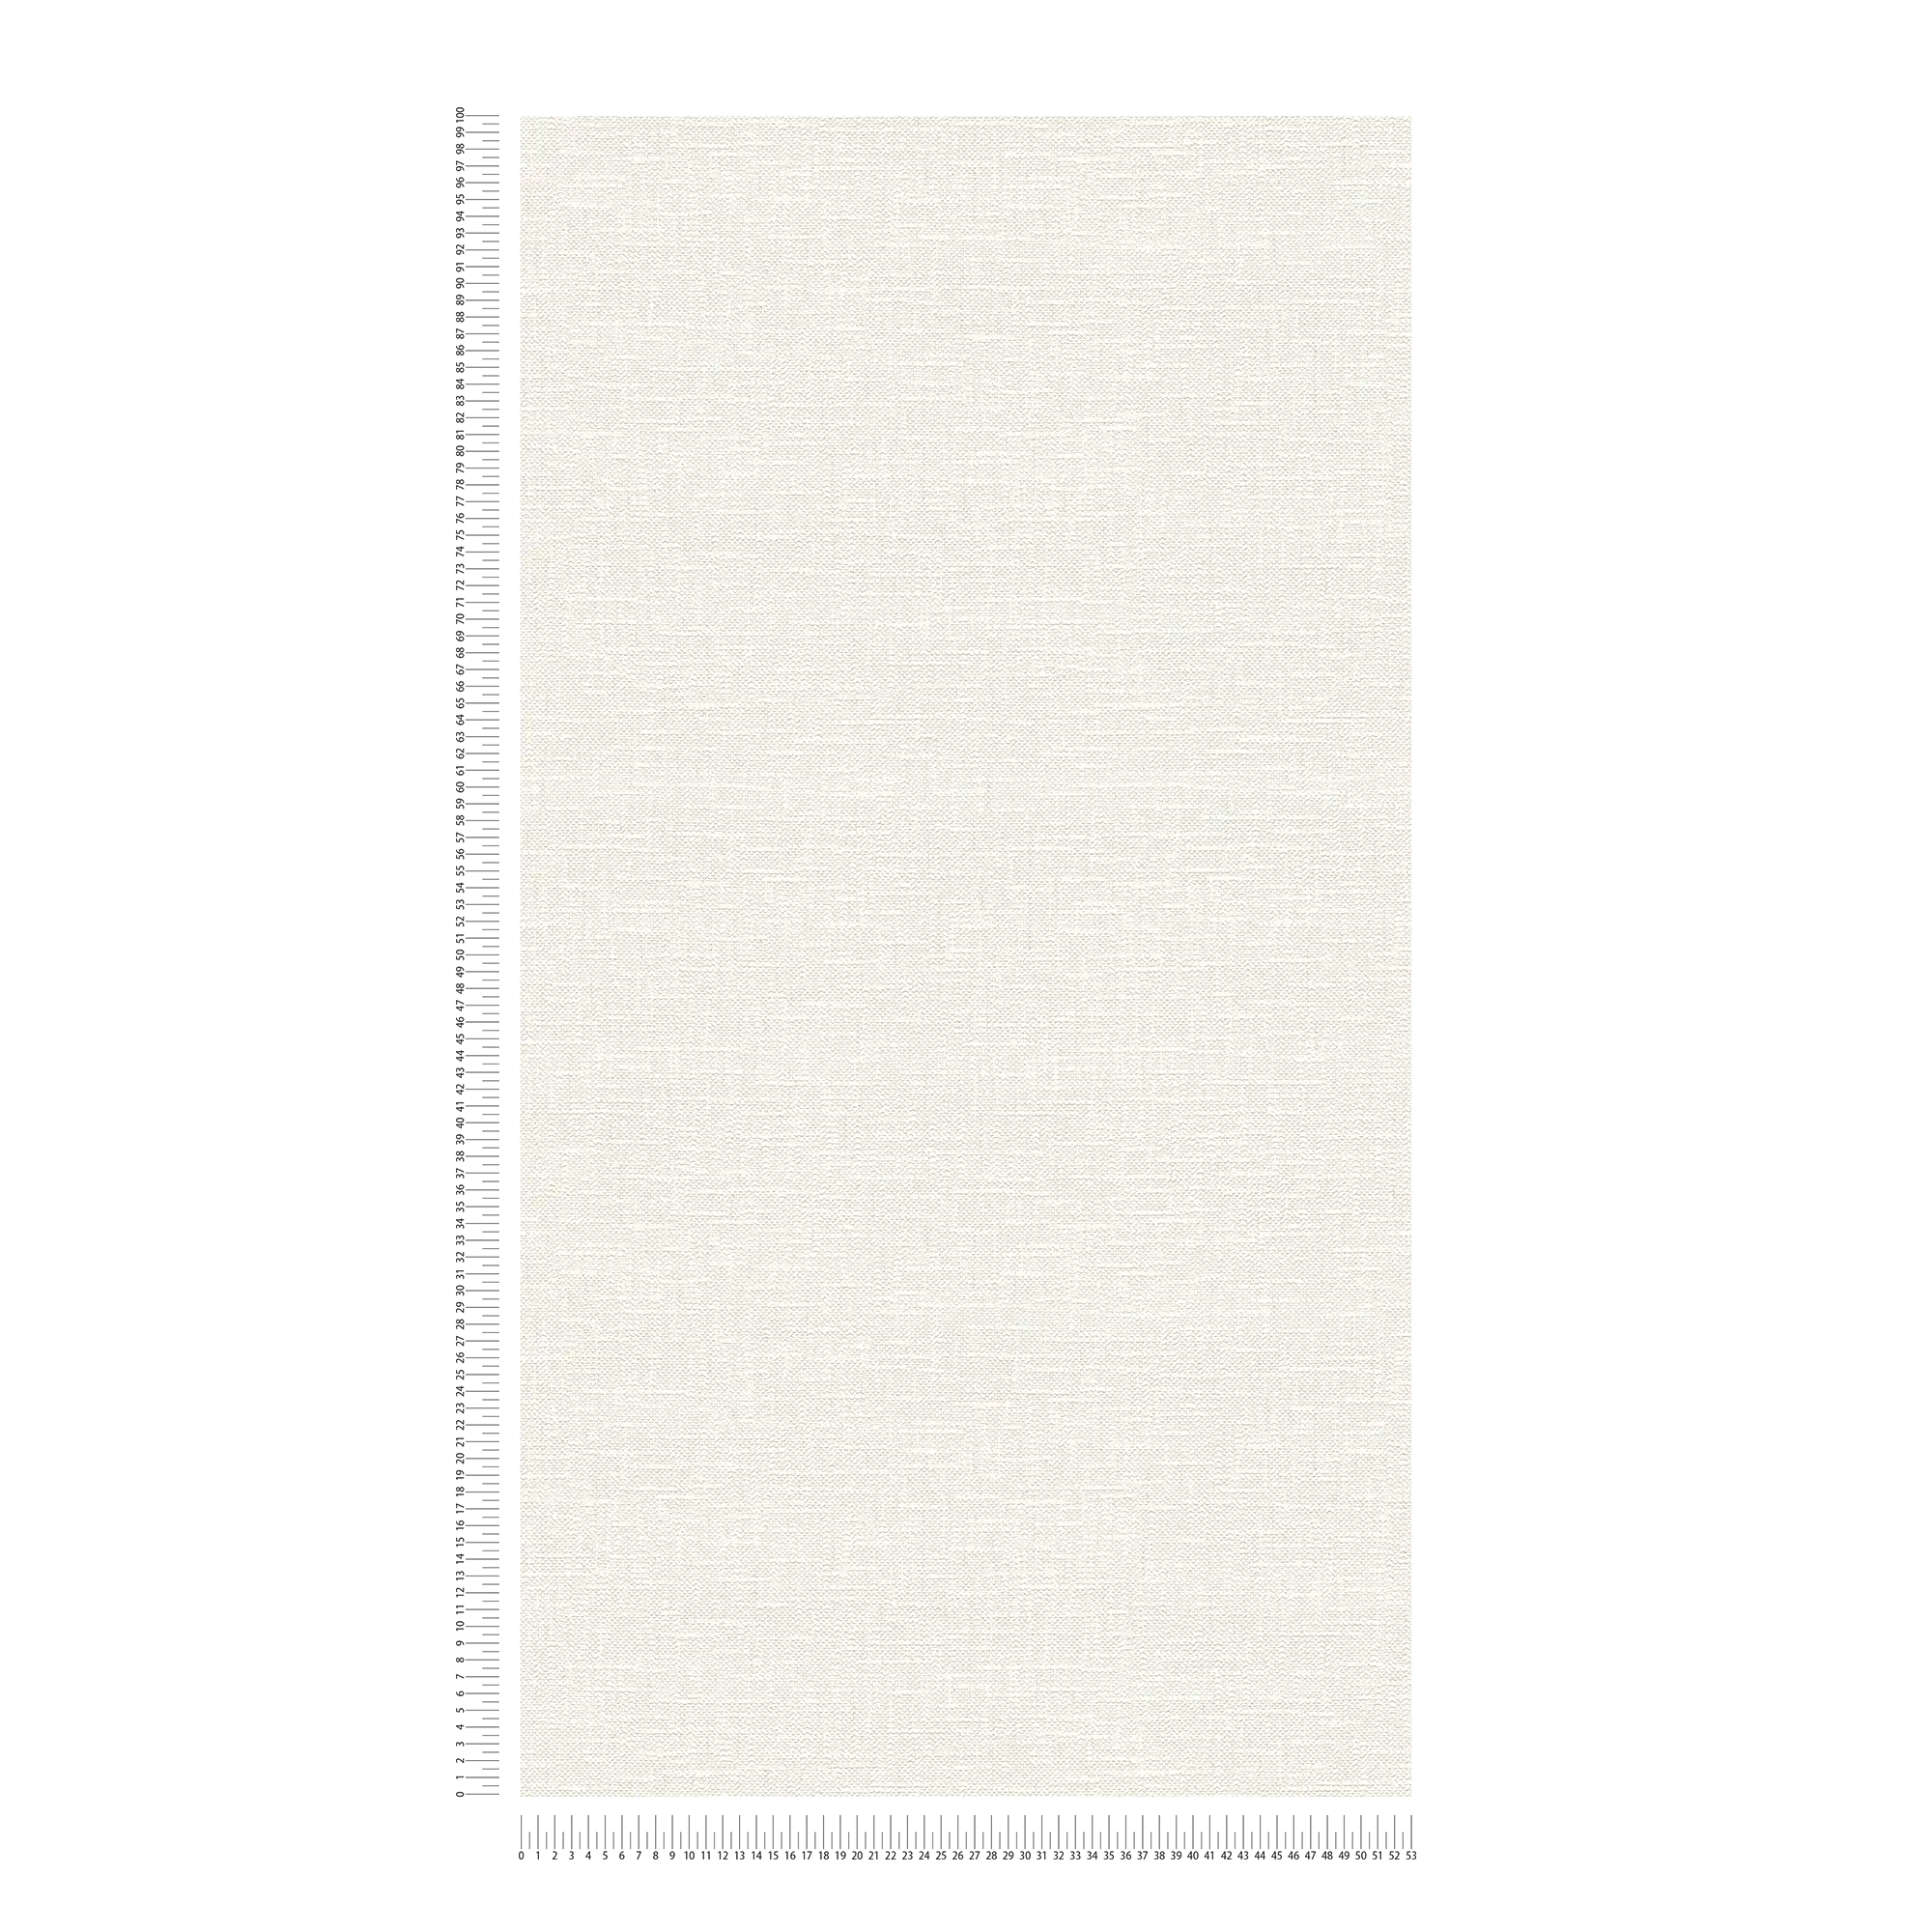             Papier peint rétro aspect lin & structure tissée - Blanc
        